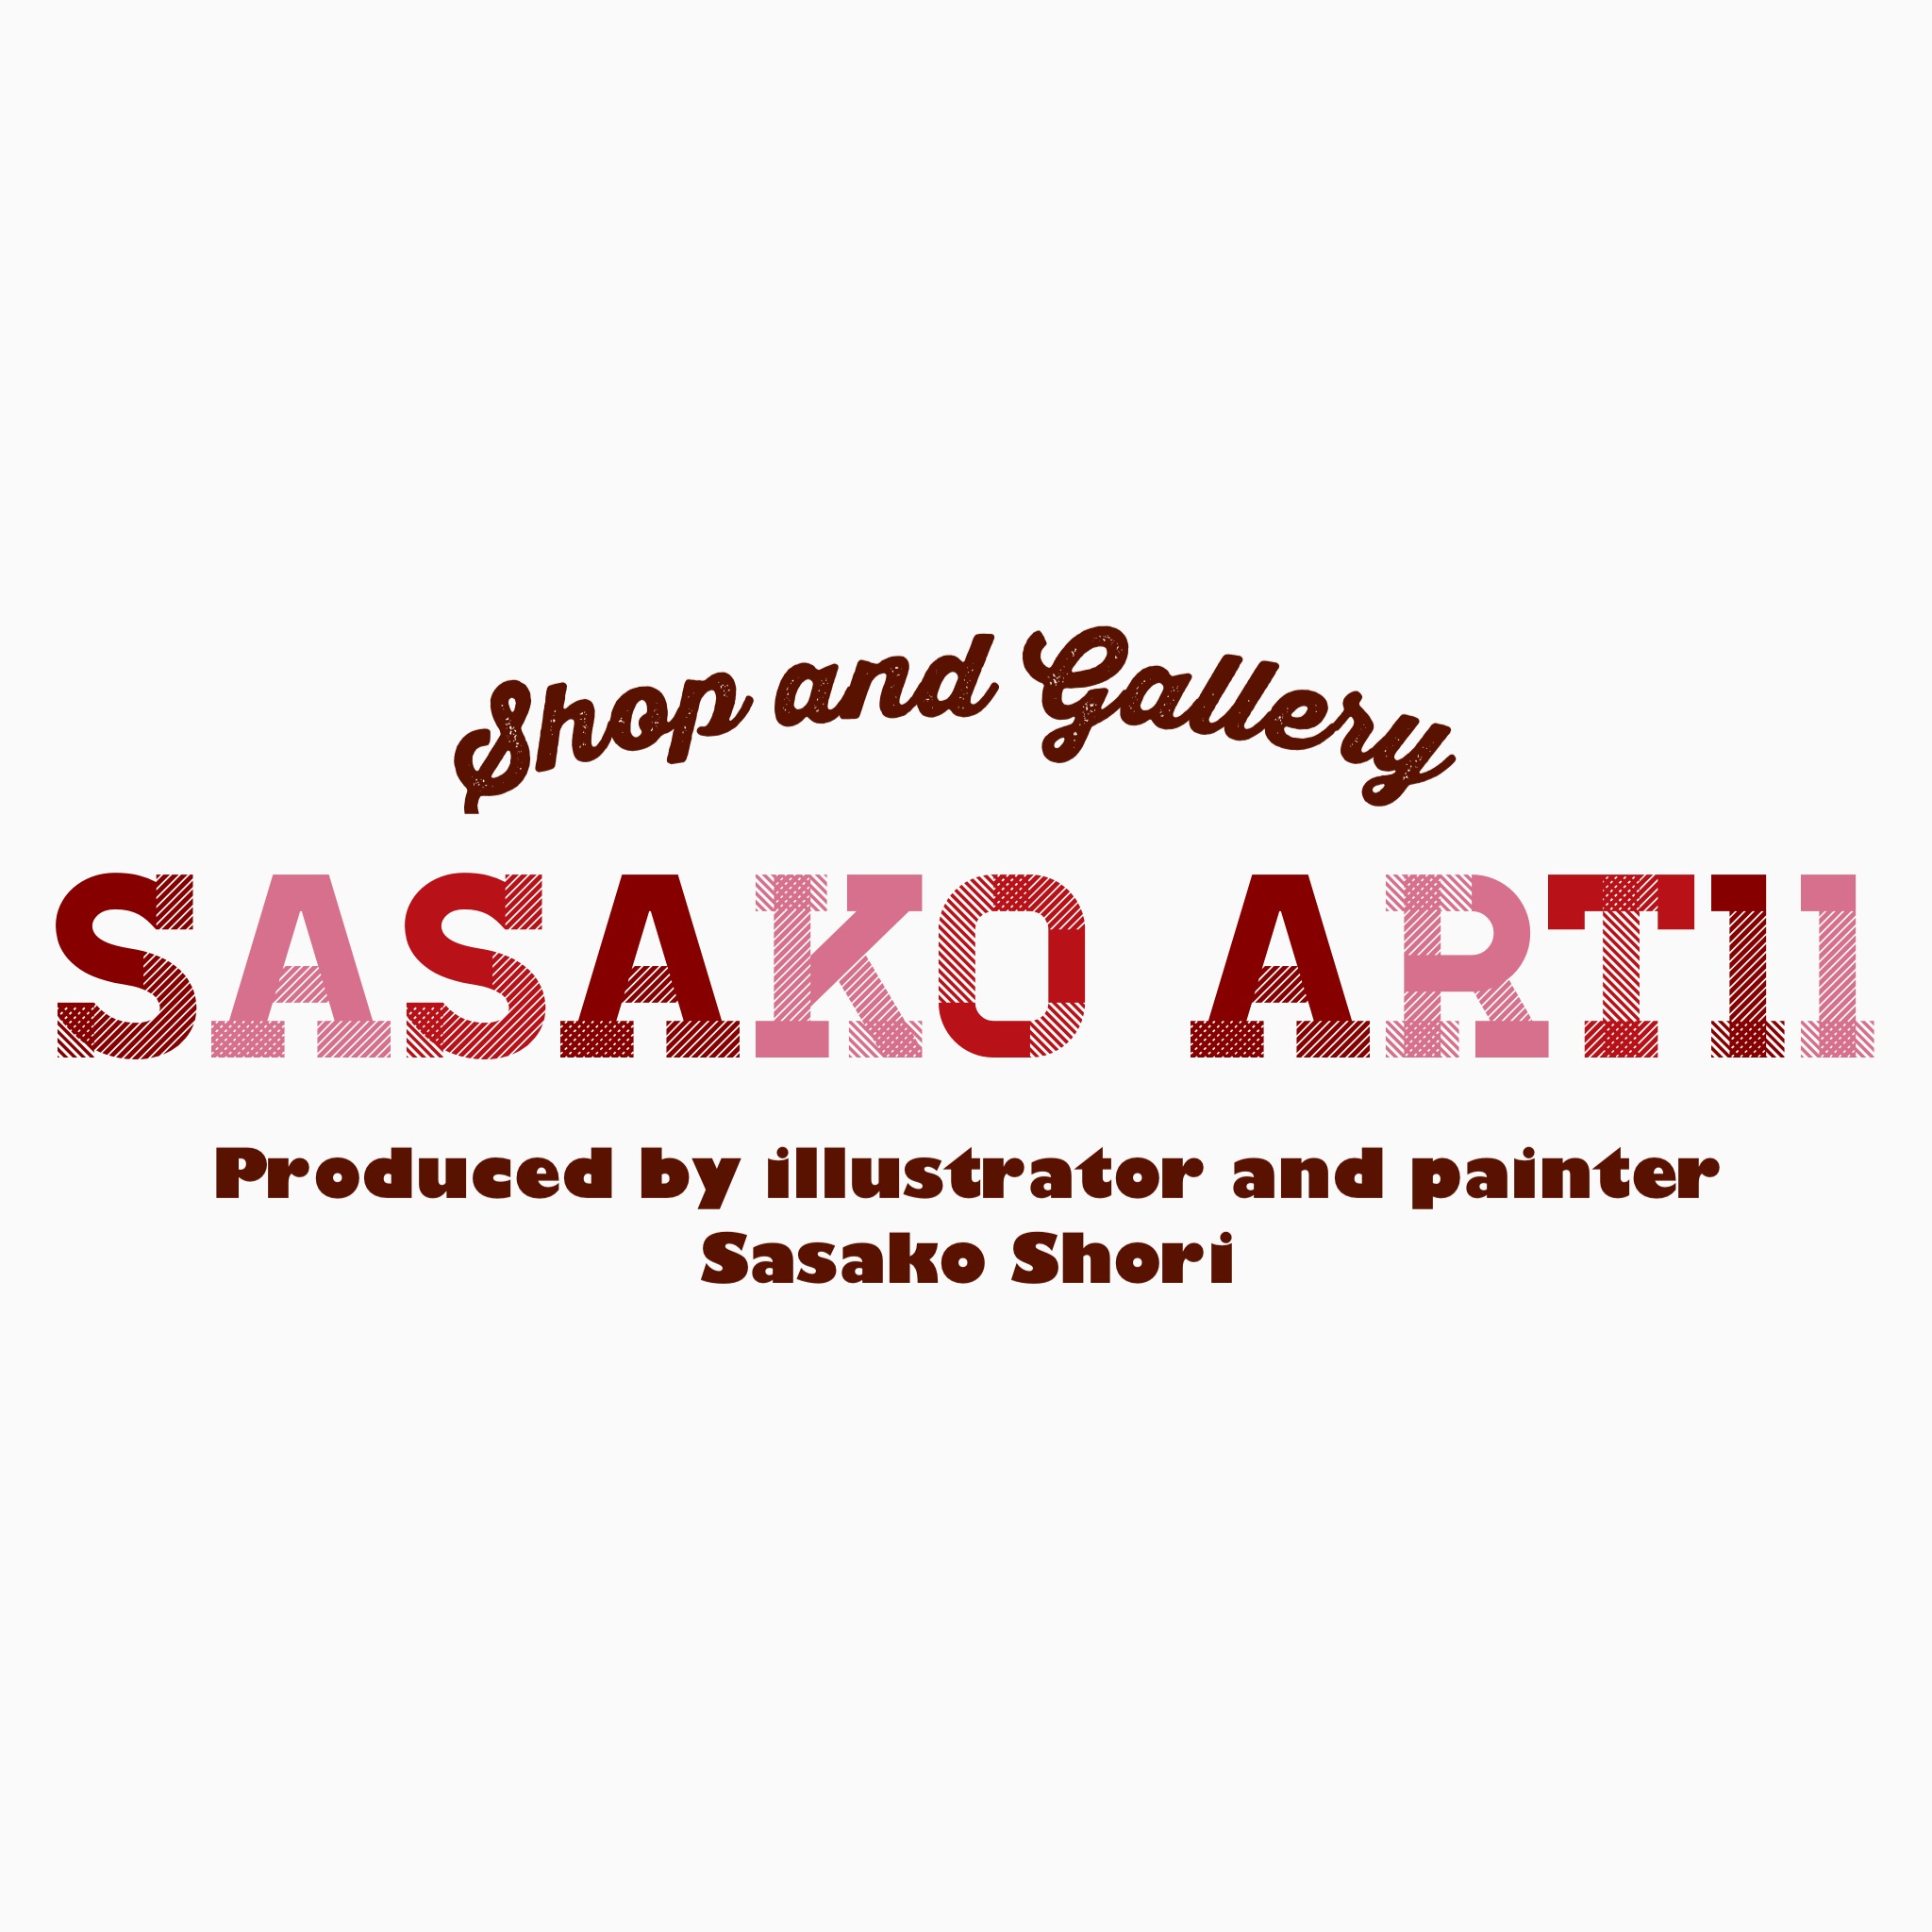 Sasako Shori Art Gallery